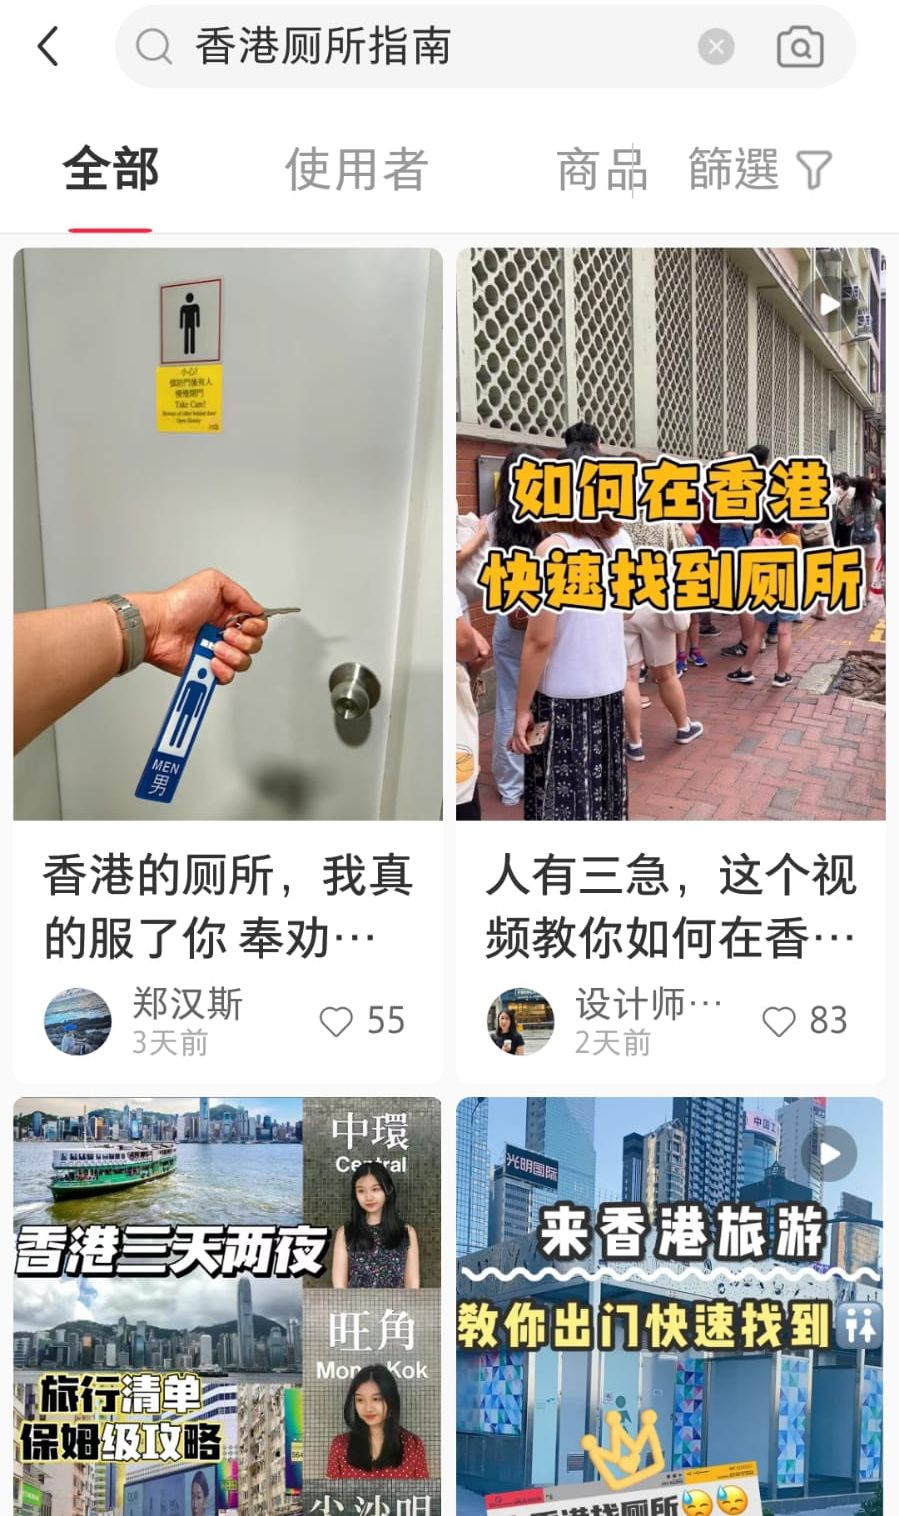 若在小紅書輸入「香港廁所」等關鍵字，會發現原來不少內地網友都製作了各式各樣關於在香港尋找廁所的實用貼士